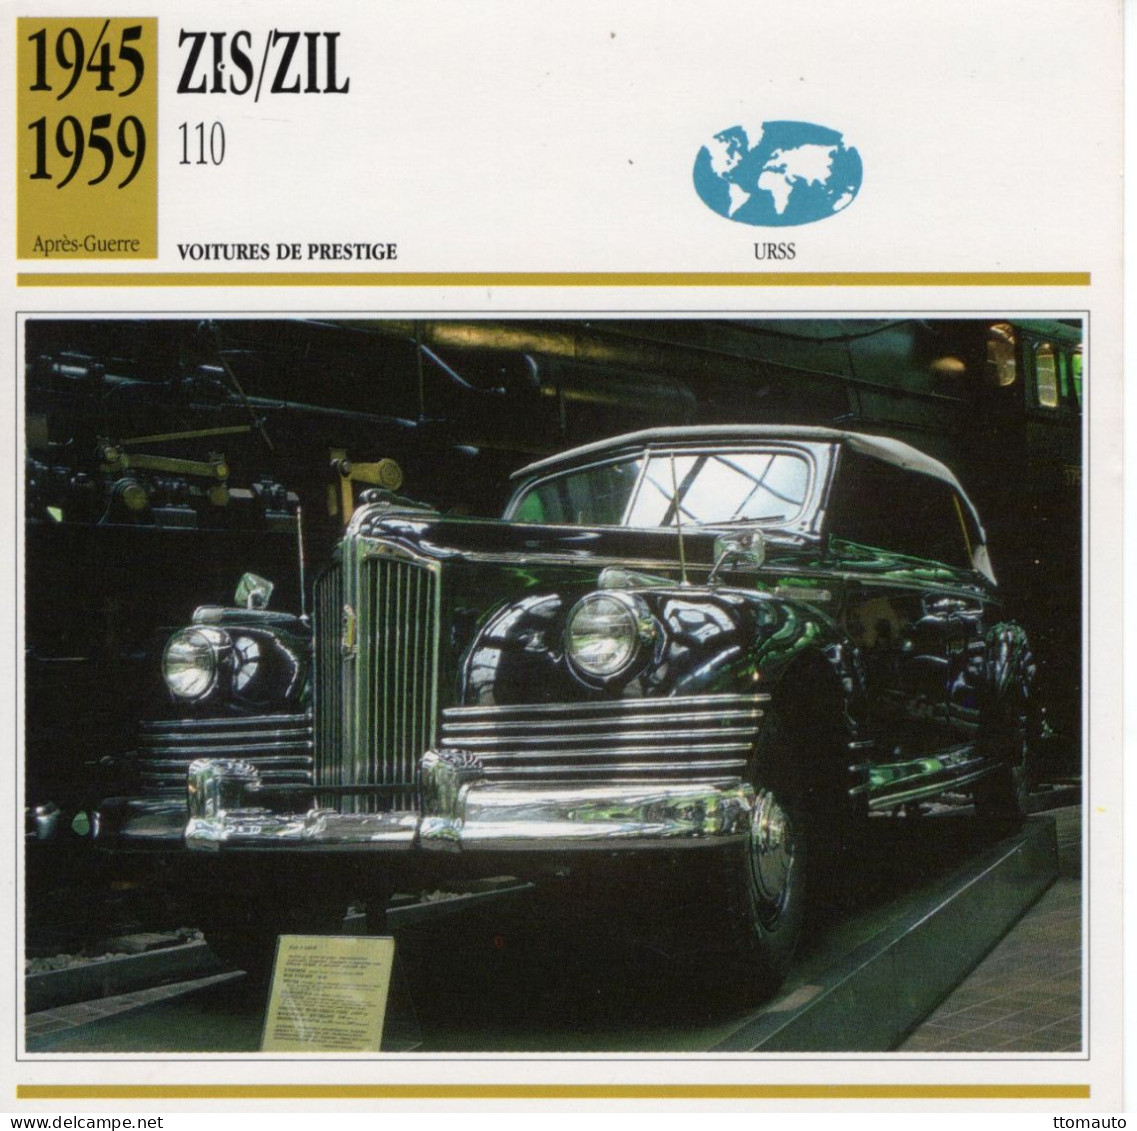 Zis/Zil 110   -  1952  - Voiture De Prestige -  Fiche Technique Automobile (URSS) - Coches